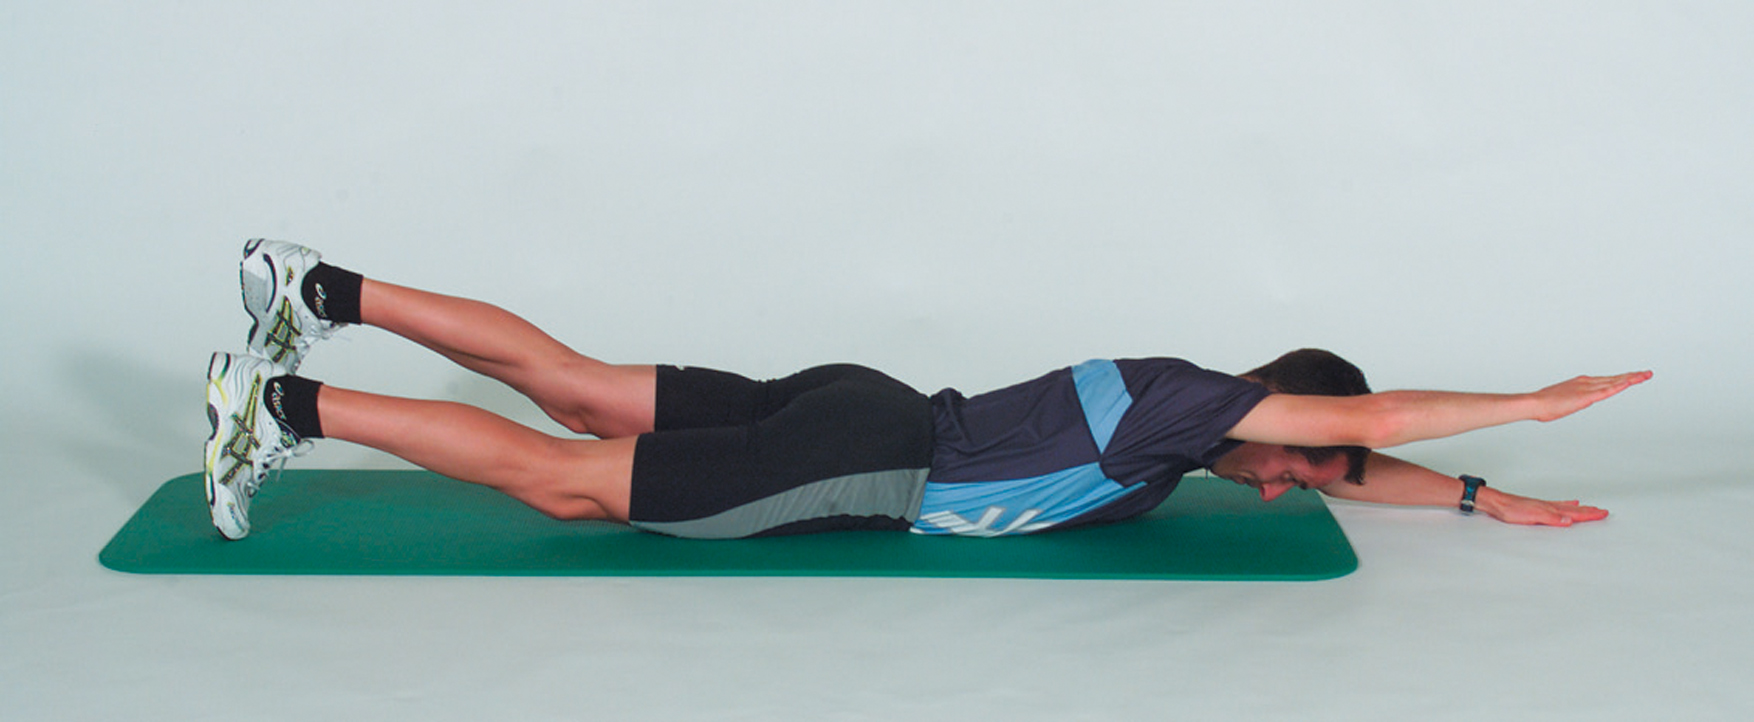 Renforcement musculaire – Dorsaux: Lever le bras et la jambe